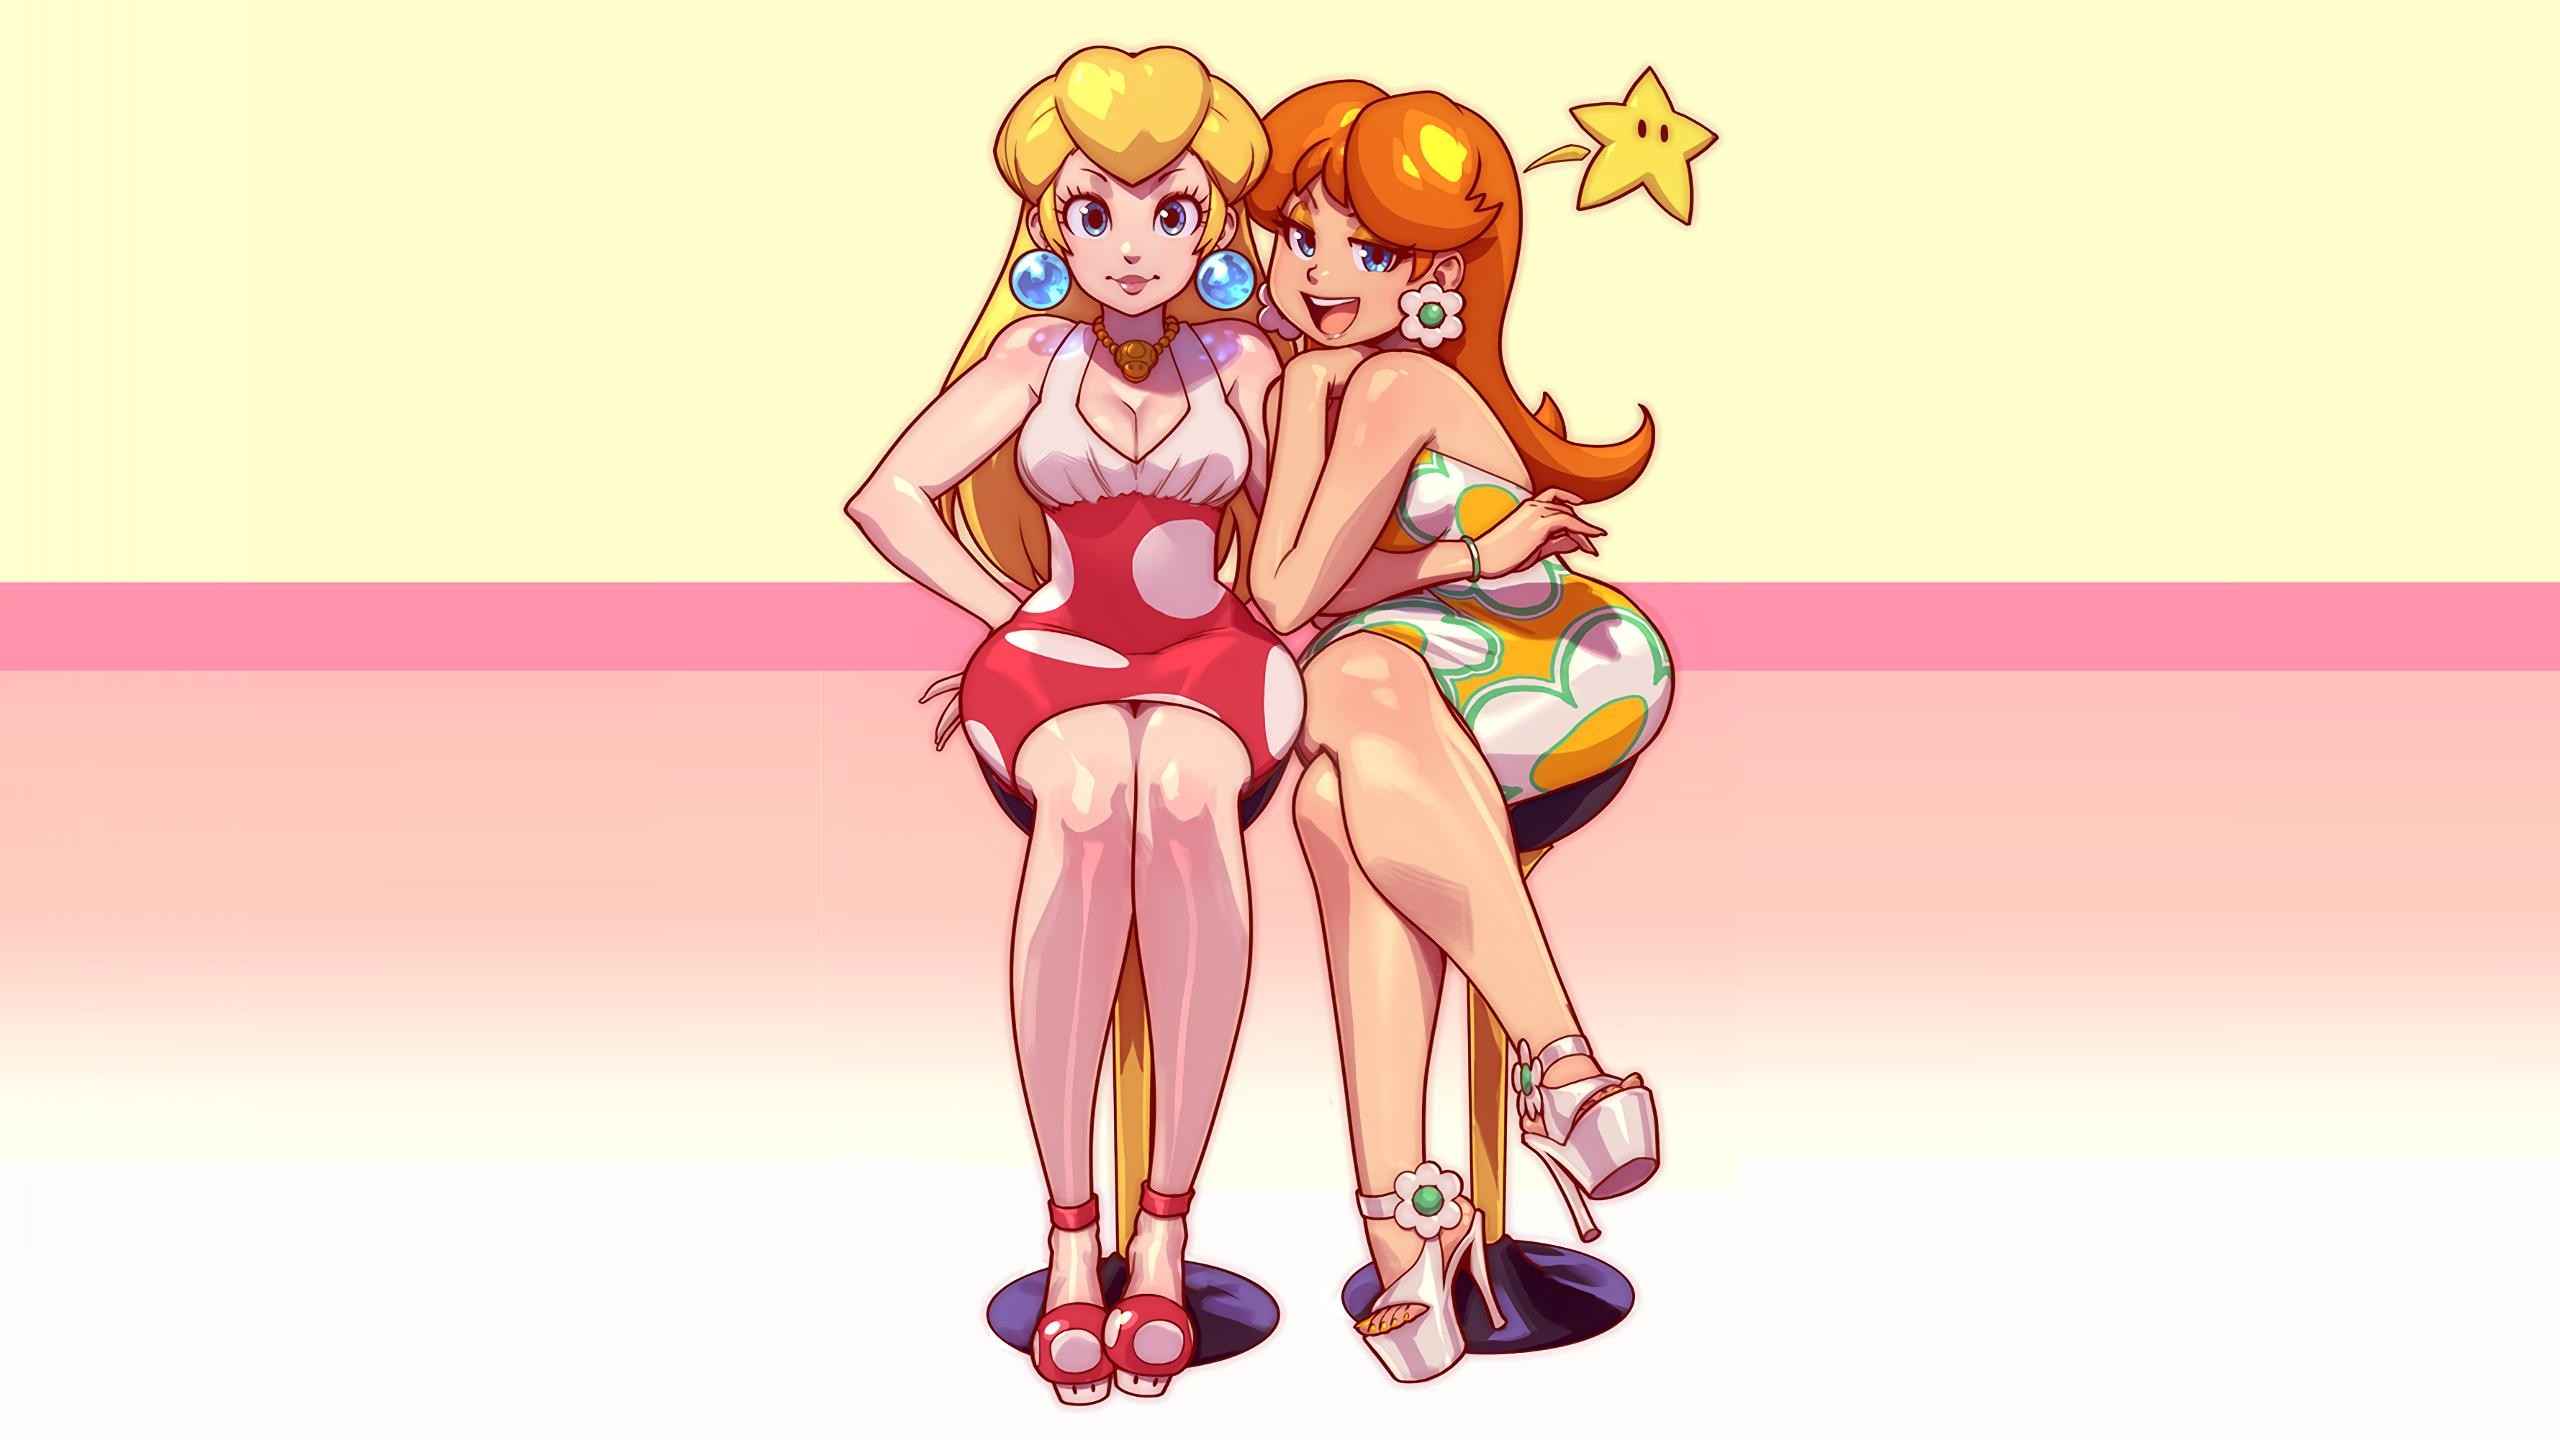 Princess Peach Super Mario High Heels Princess Daisy Blonde Redhead Feet 2560x1440